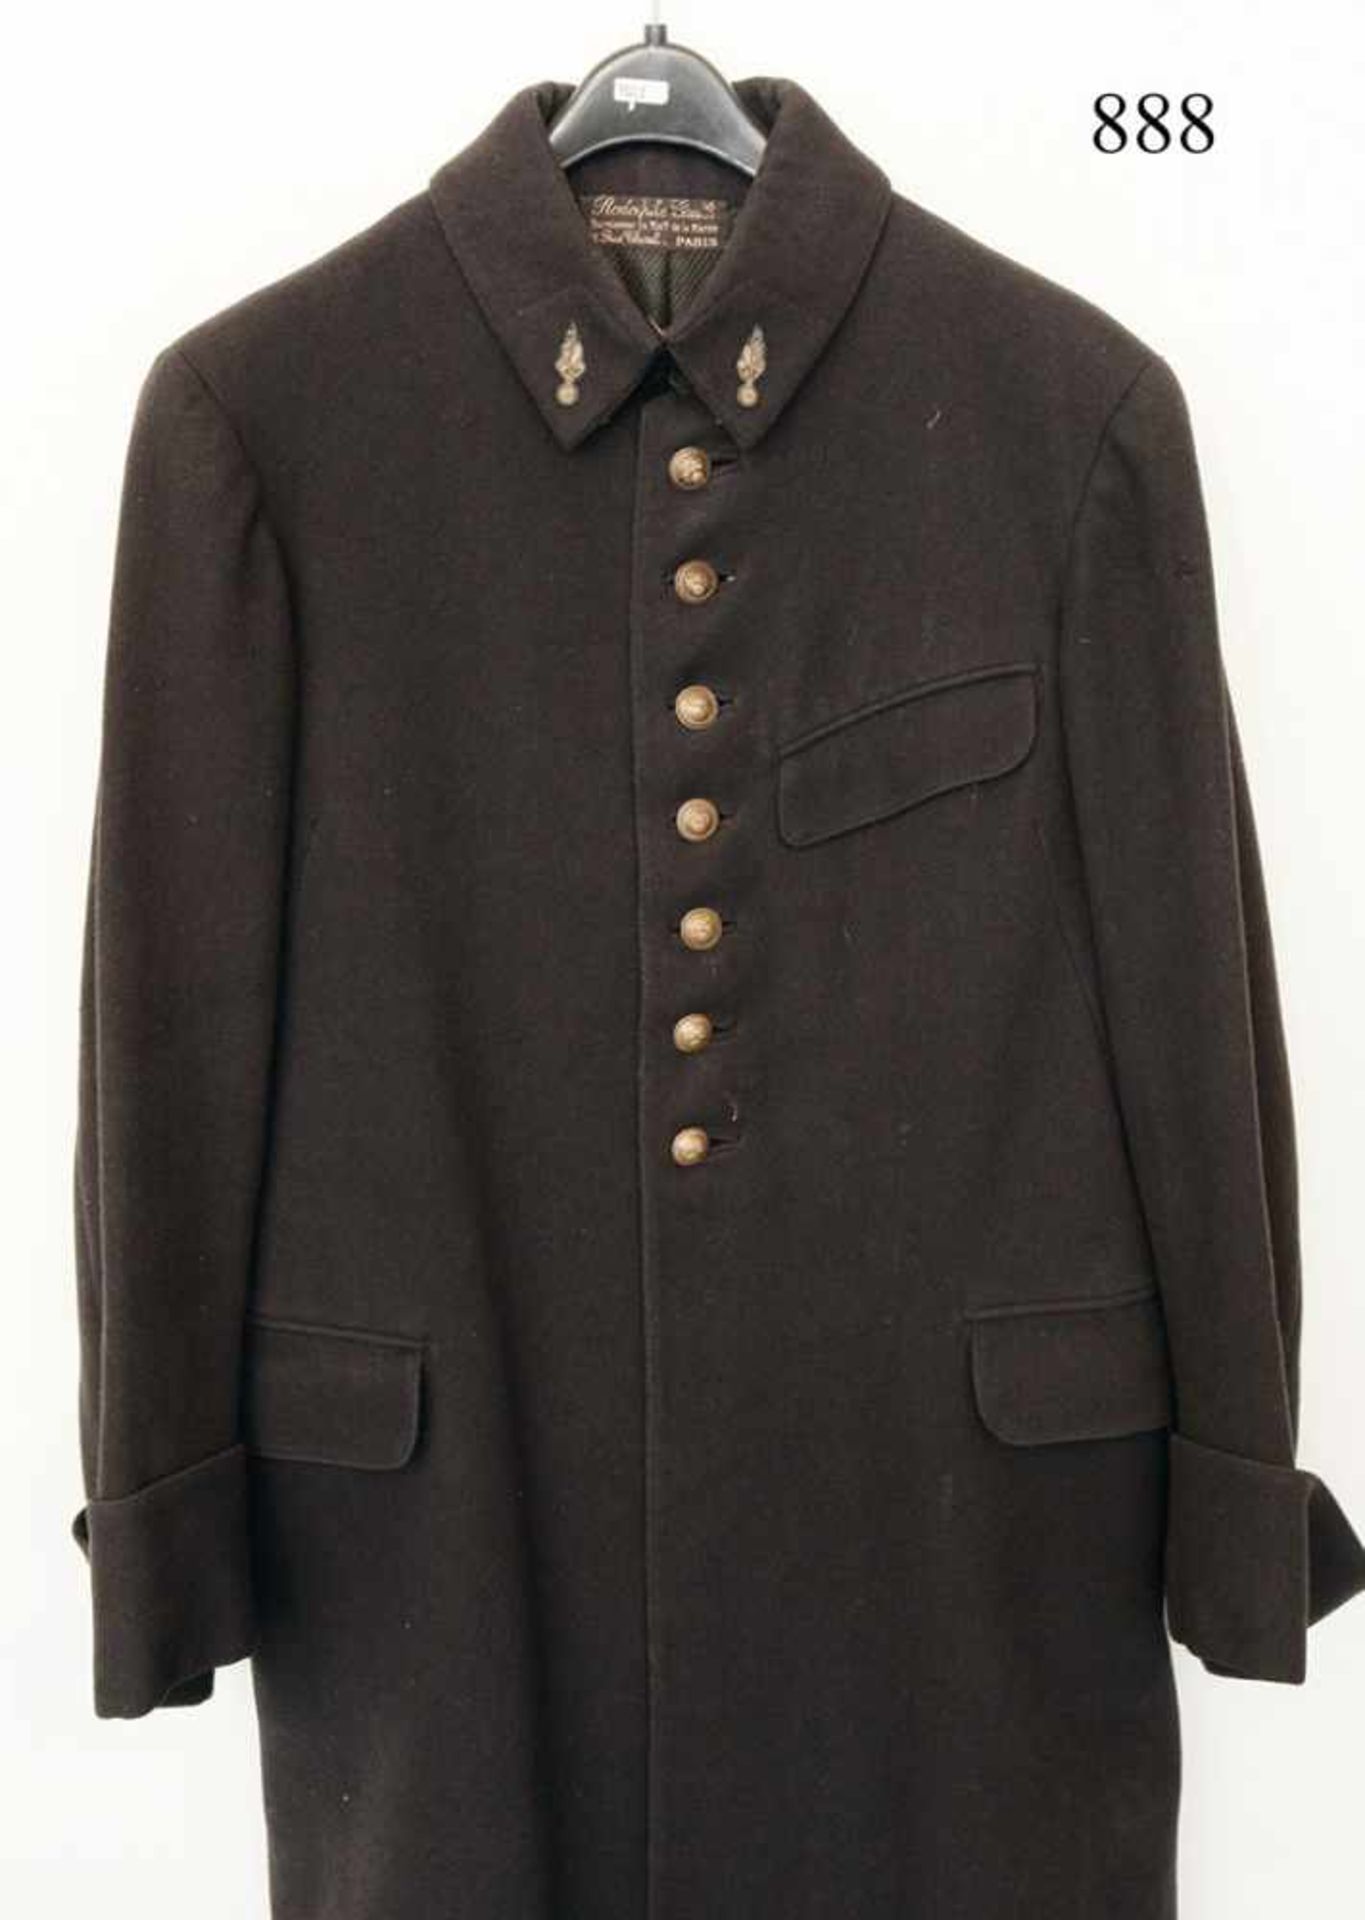 Mantel für OffiziereFast schwarzes, dichtes Tuch. Schneidereikett aus Paris. Zustand: II